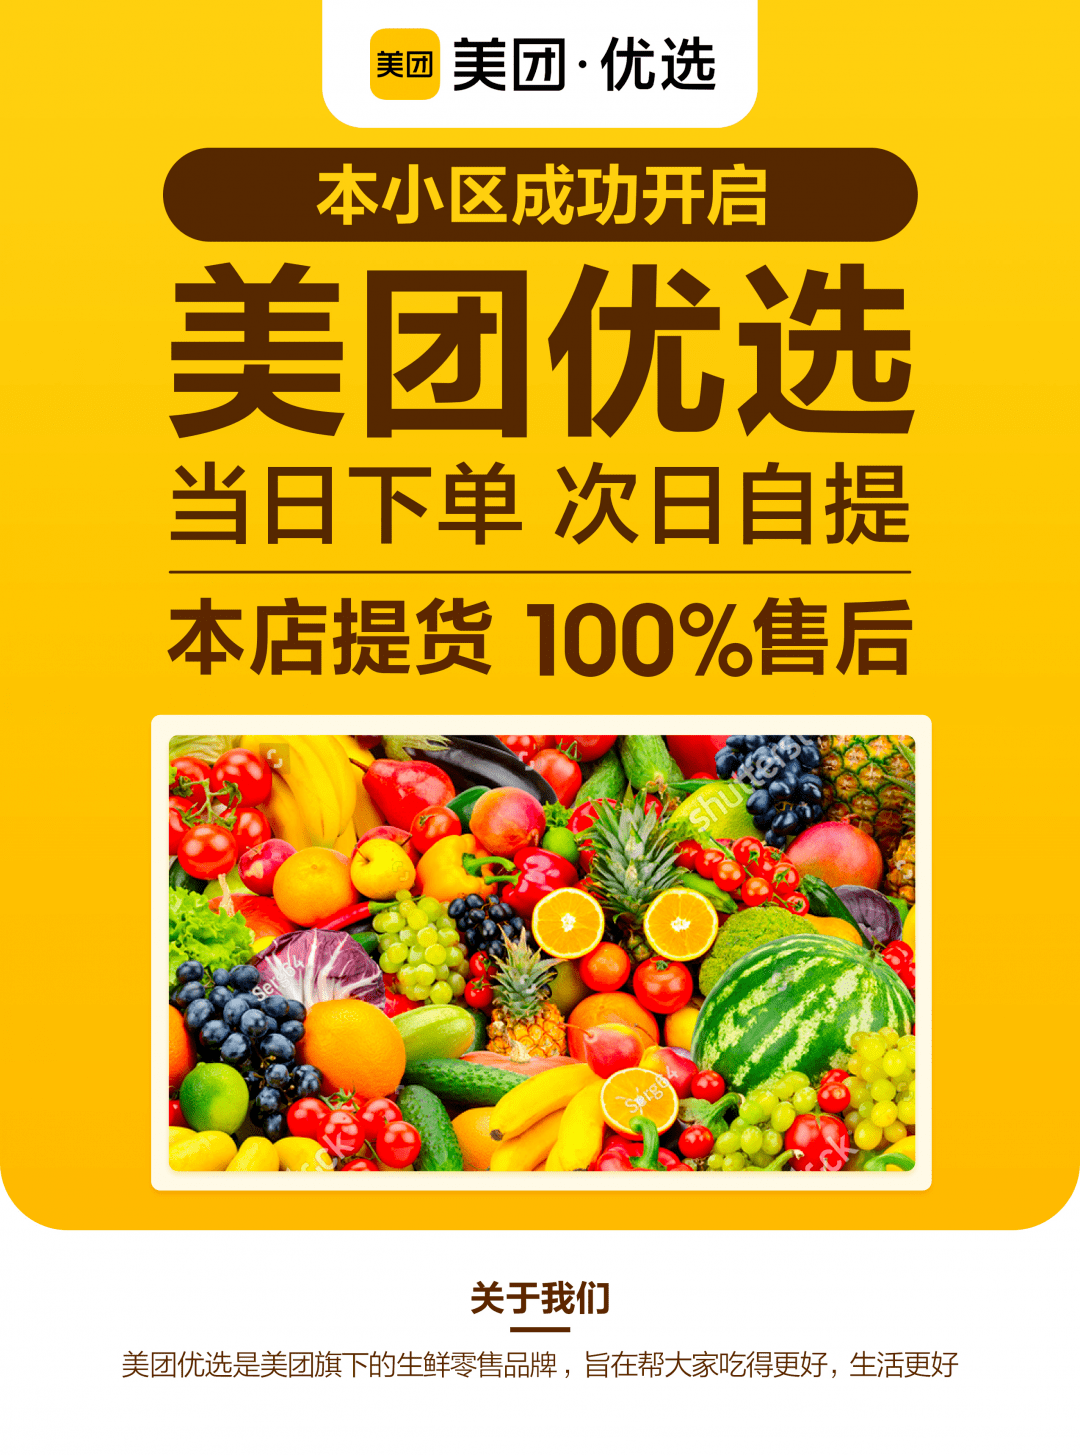 【美团优选】新用户0.01元买水果,蔬菜,零食!